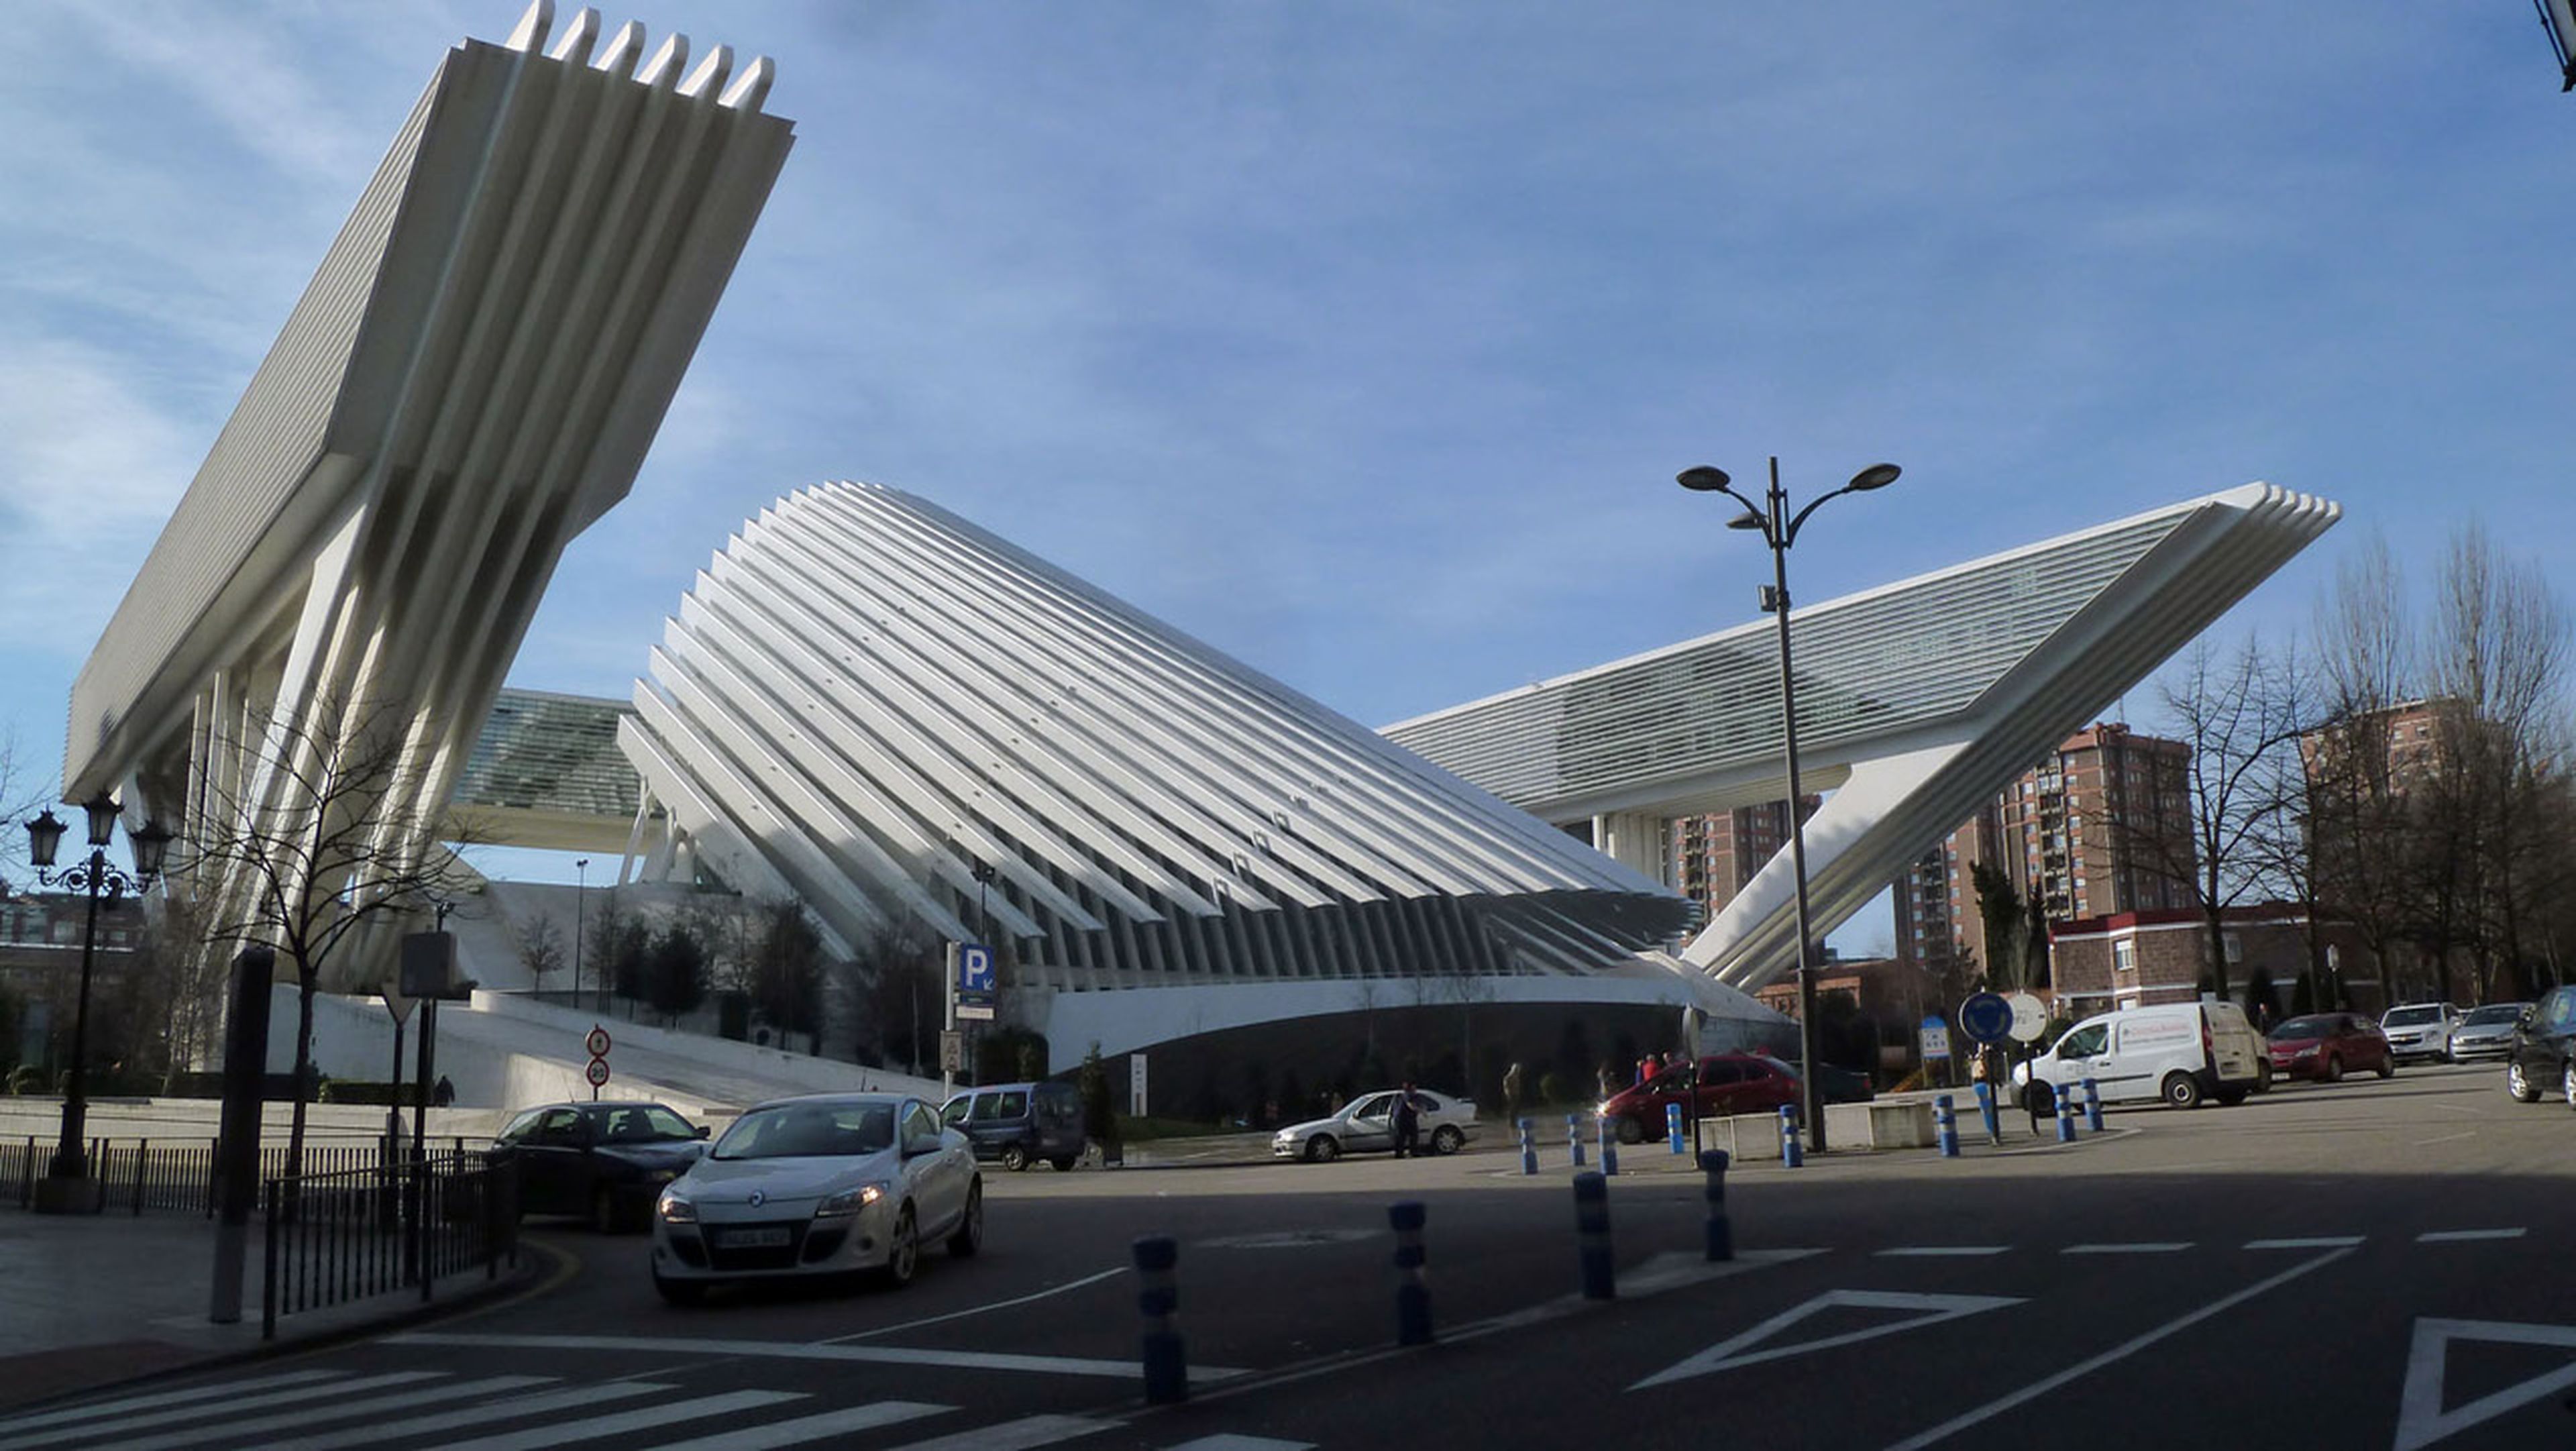 El Palacio de Congresos de Oviedo, obra de Calatrava, dejará de contar con tiendas en su interior como centro comercial a lo largo de 2019.